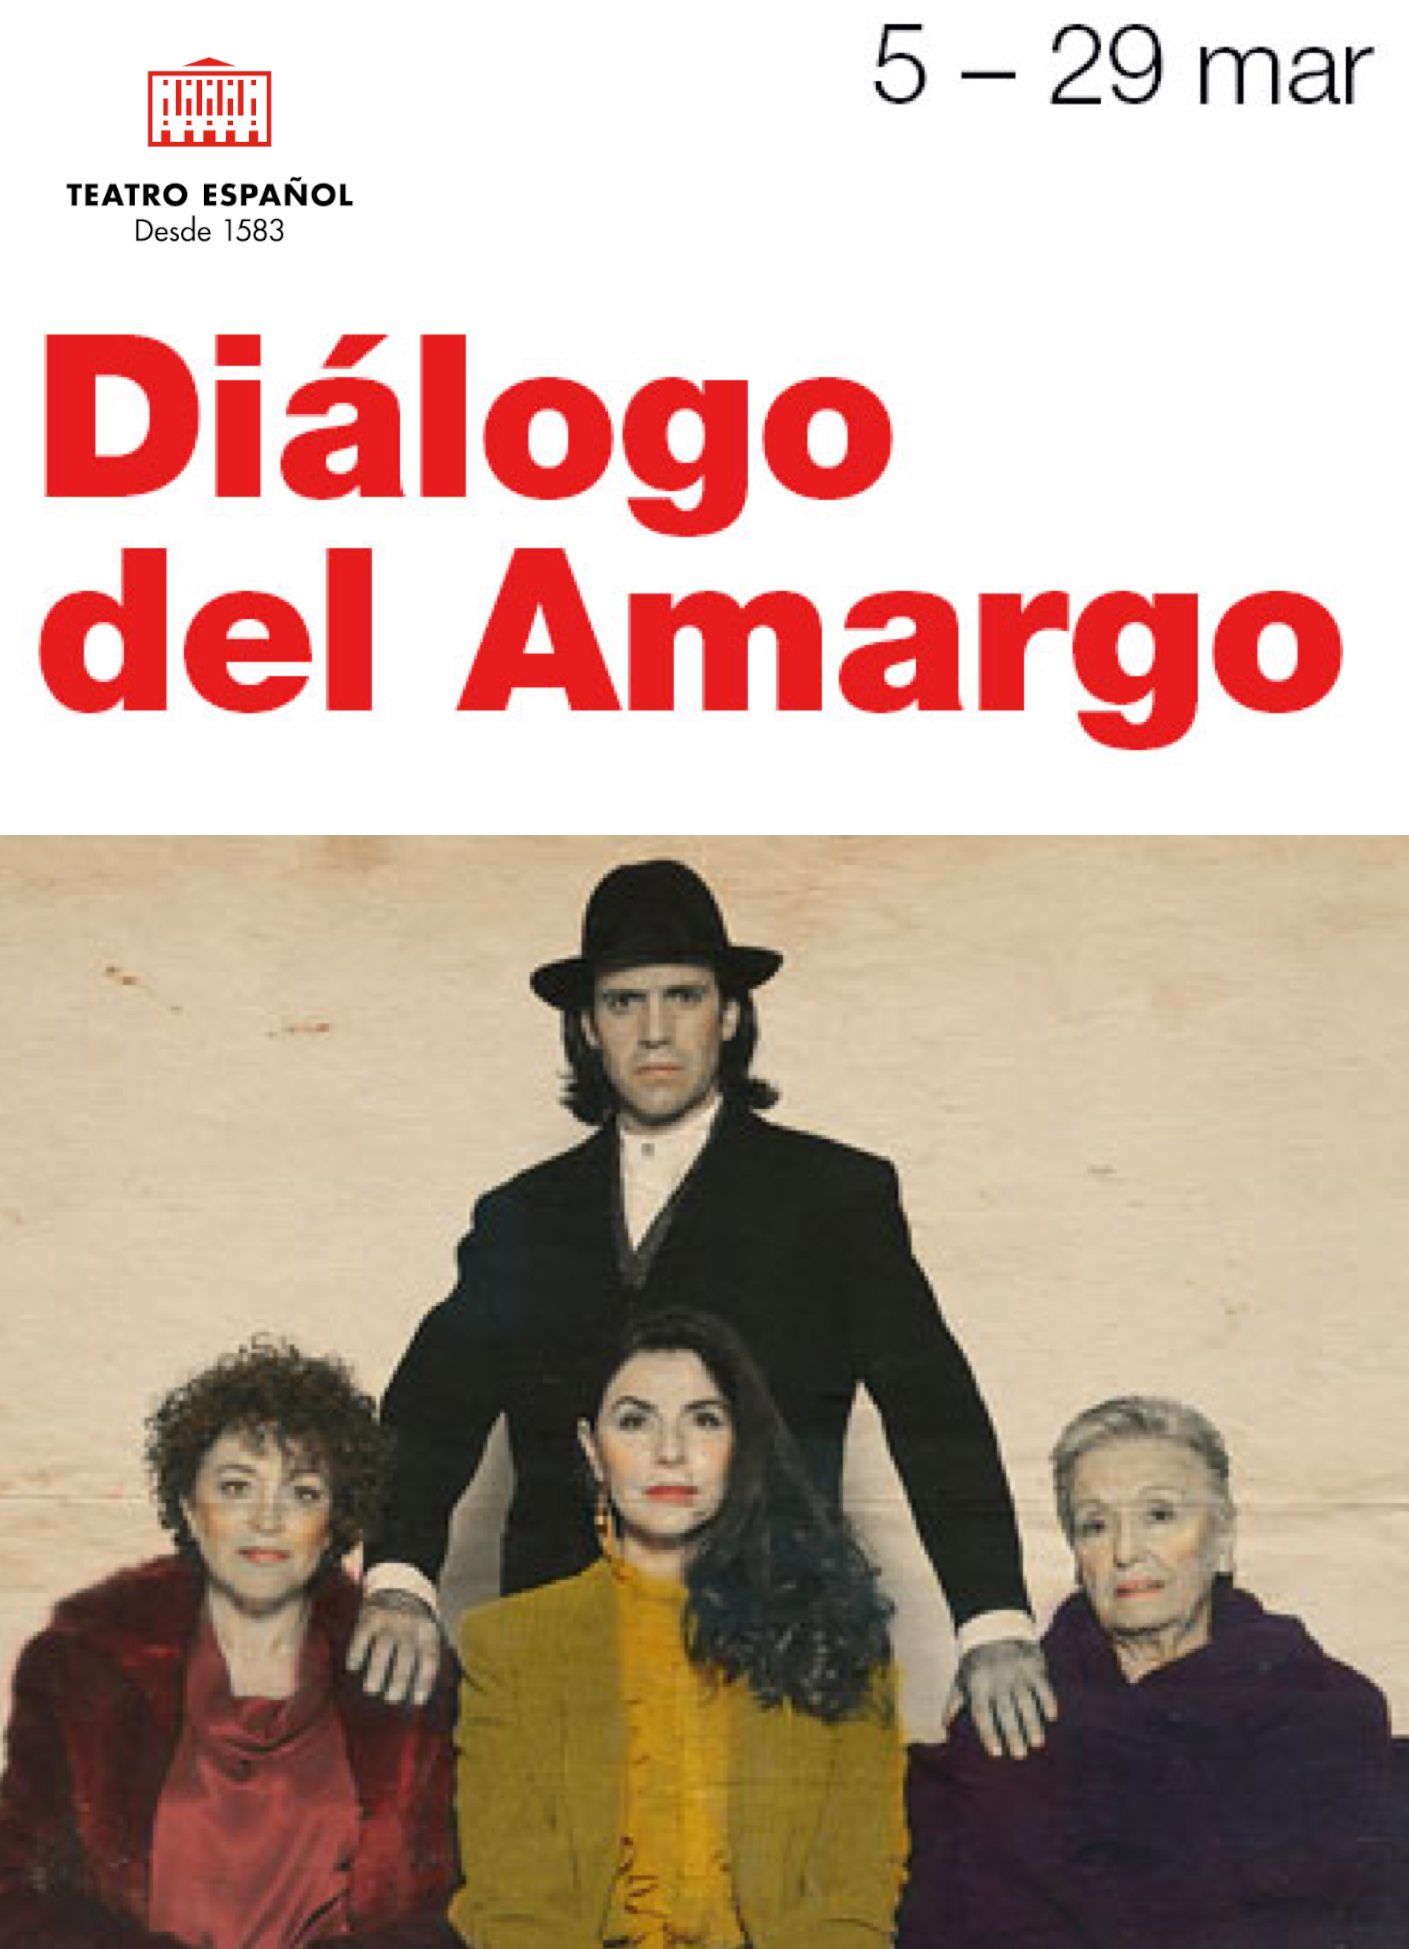 DIÁLOGO DEL AMARGO en el Teatro Español